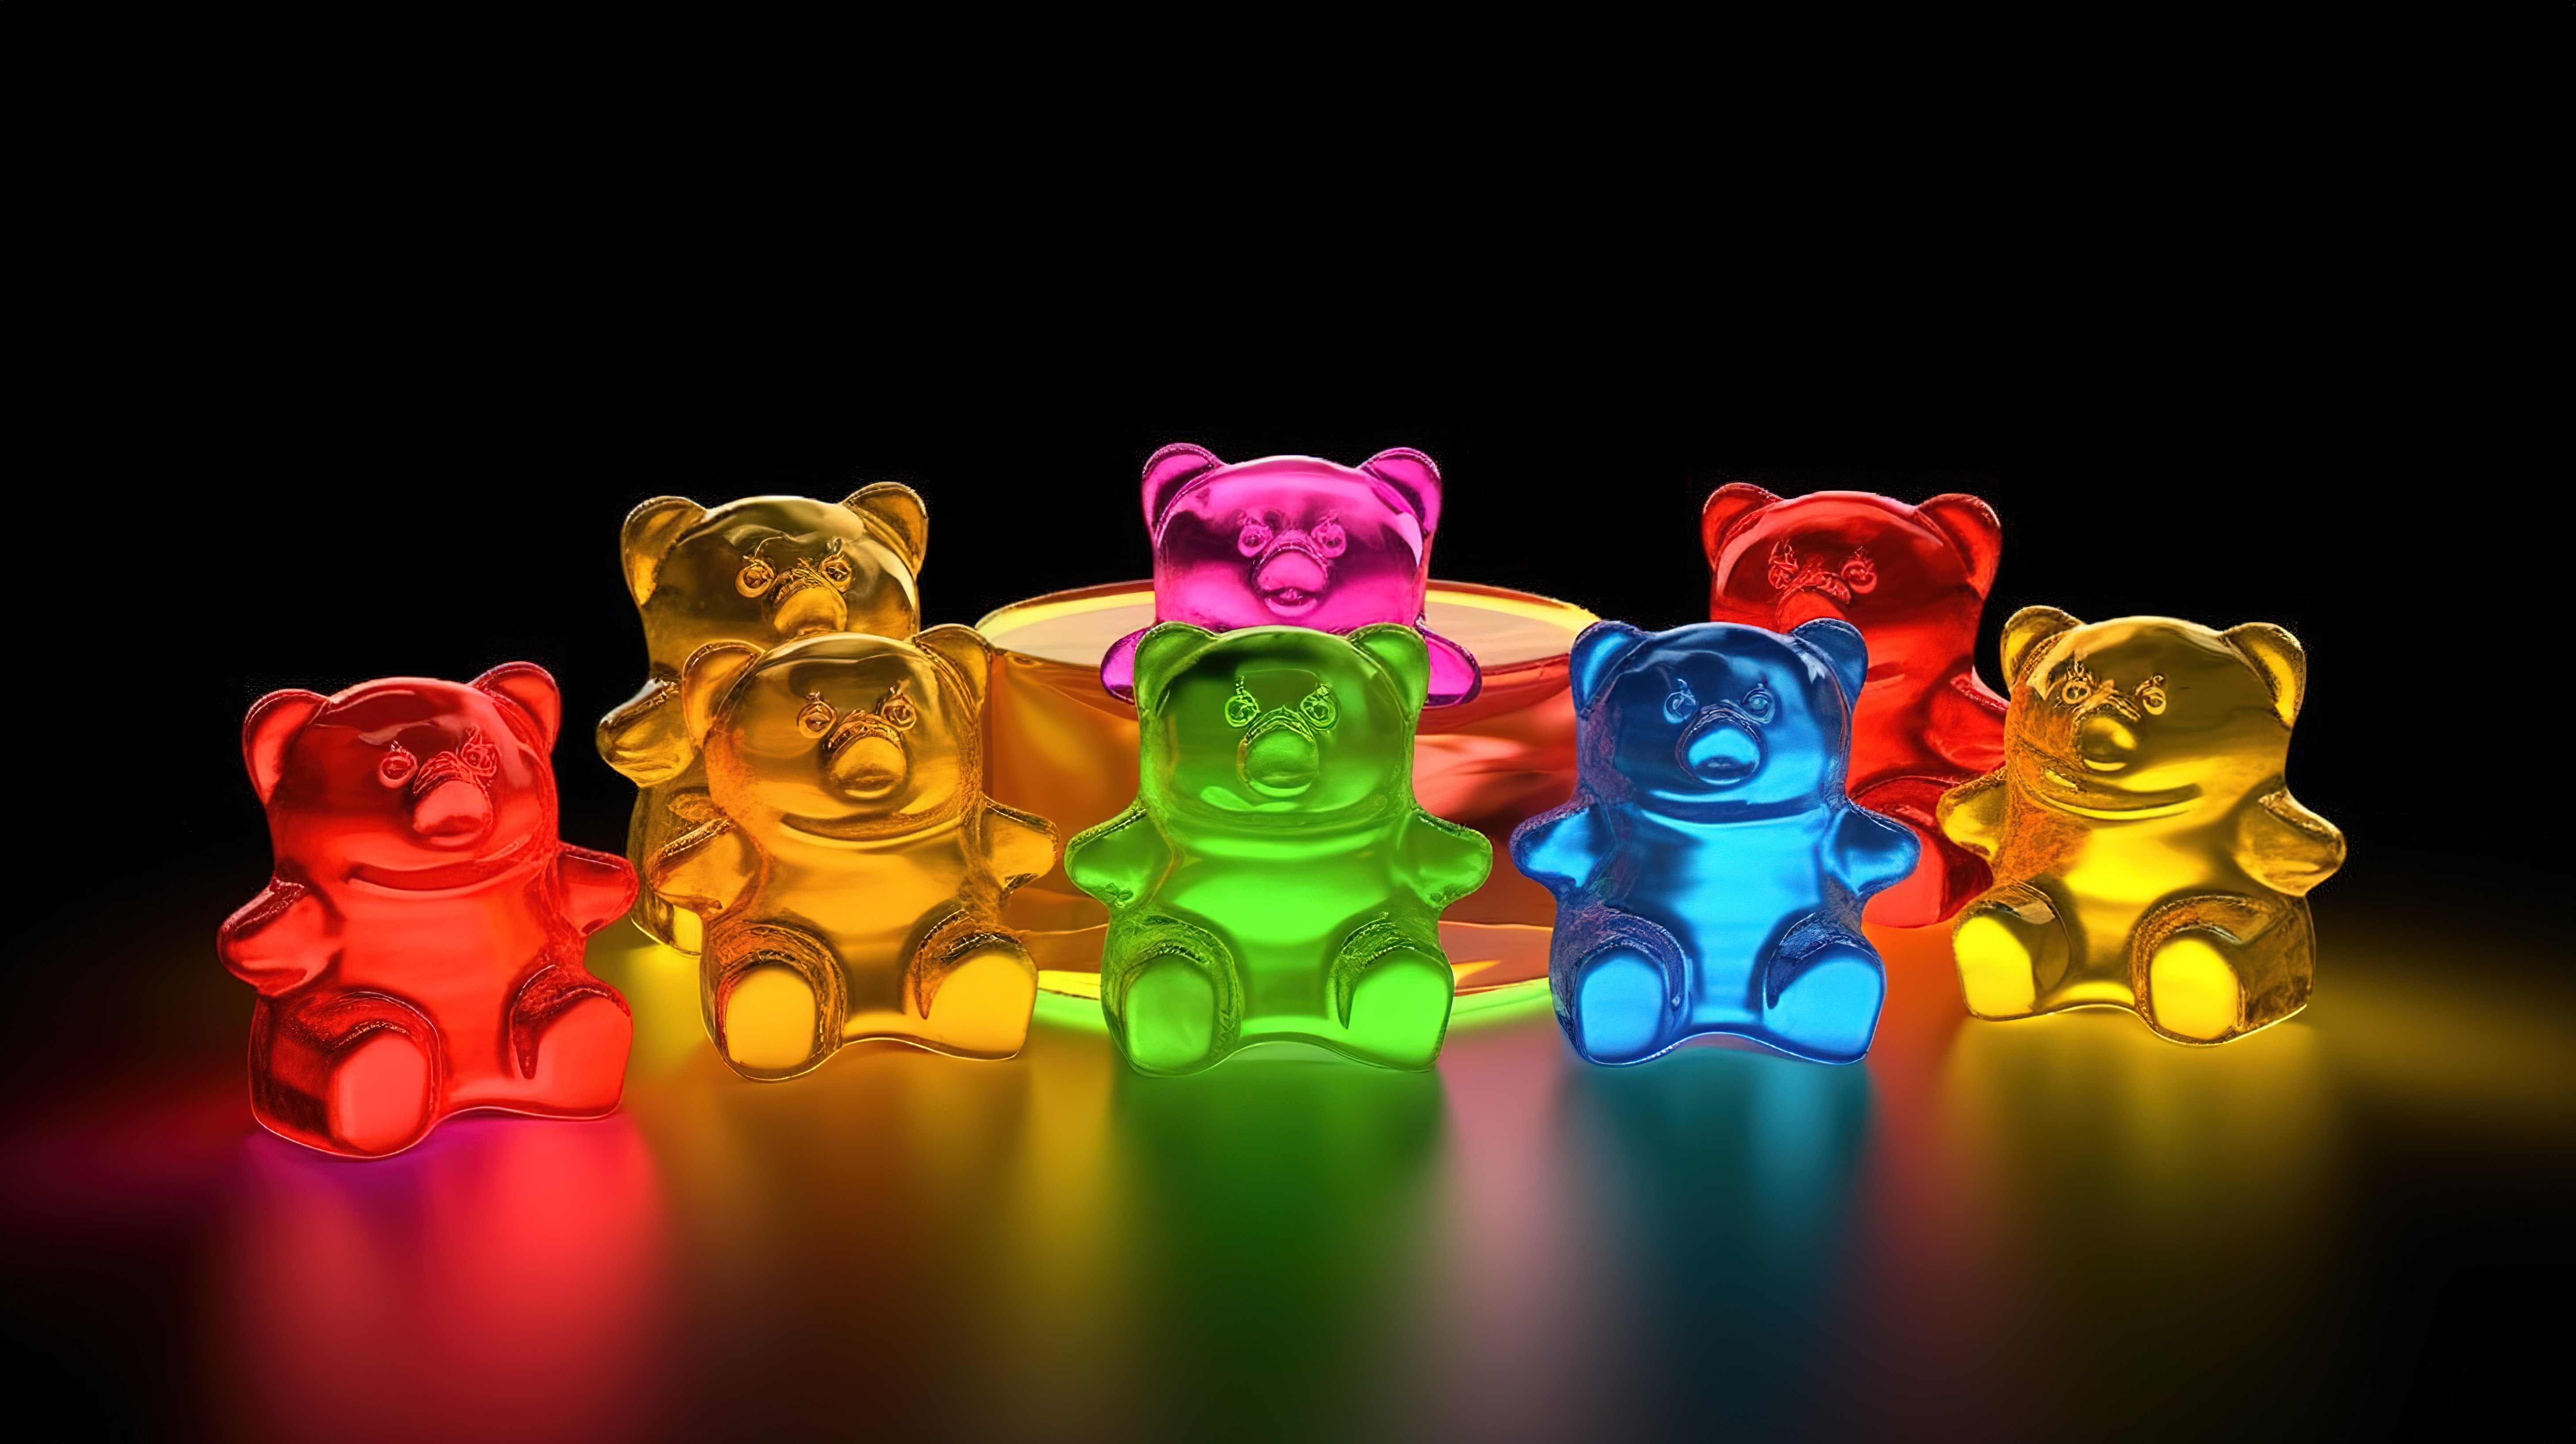 3D 渲染彩色果冻豆，形状为熊，具有软糖水果口味图片